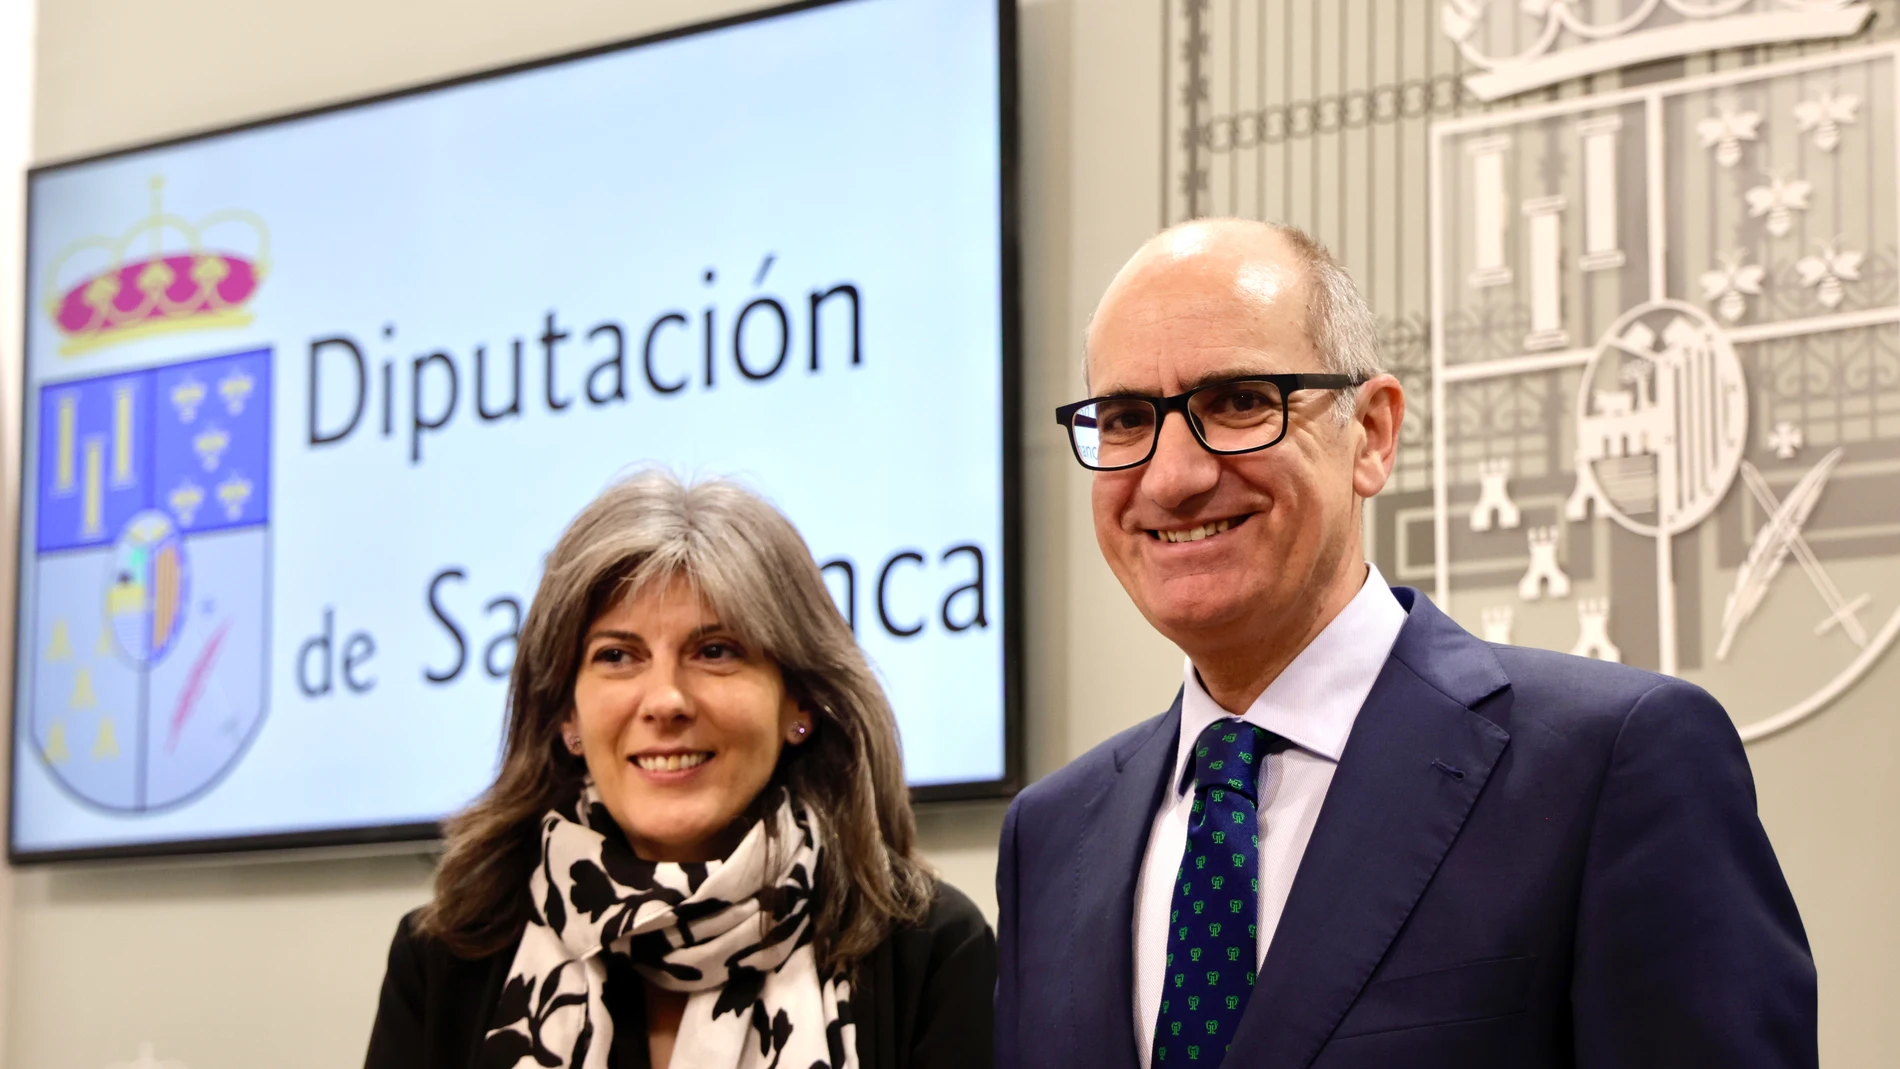 El presidente de la Diputación de Salamanca, Javier Iglesias, y la diputada Eva Picado presentan el proyecto